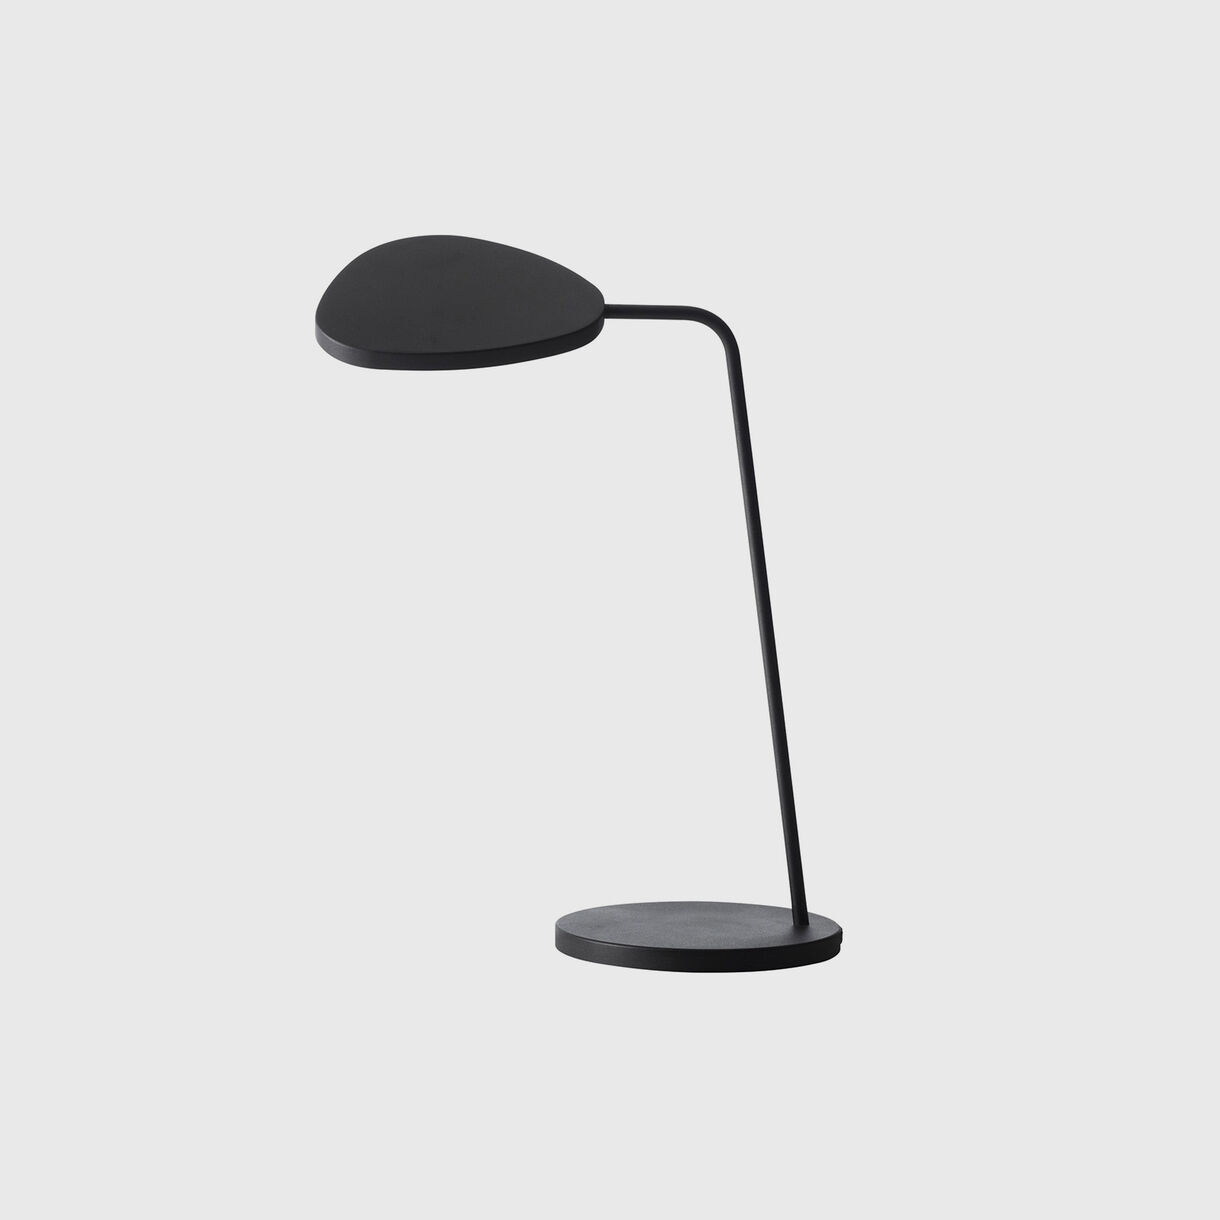 Leaf Table Lamp, Black